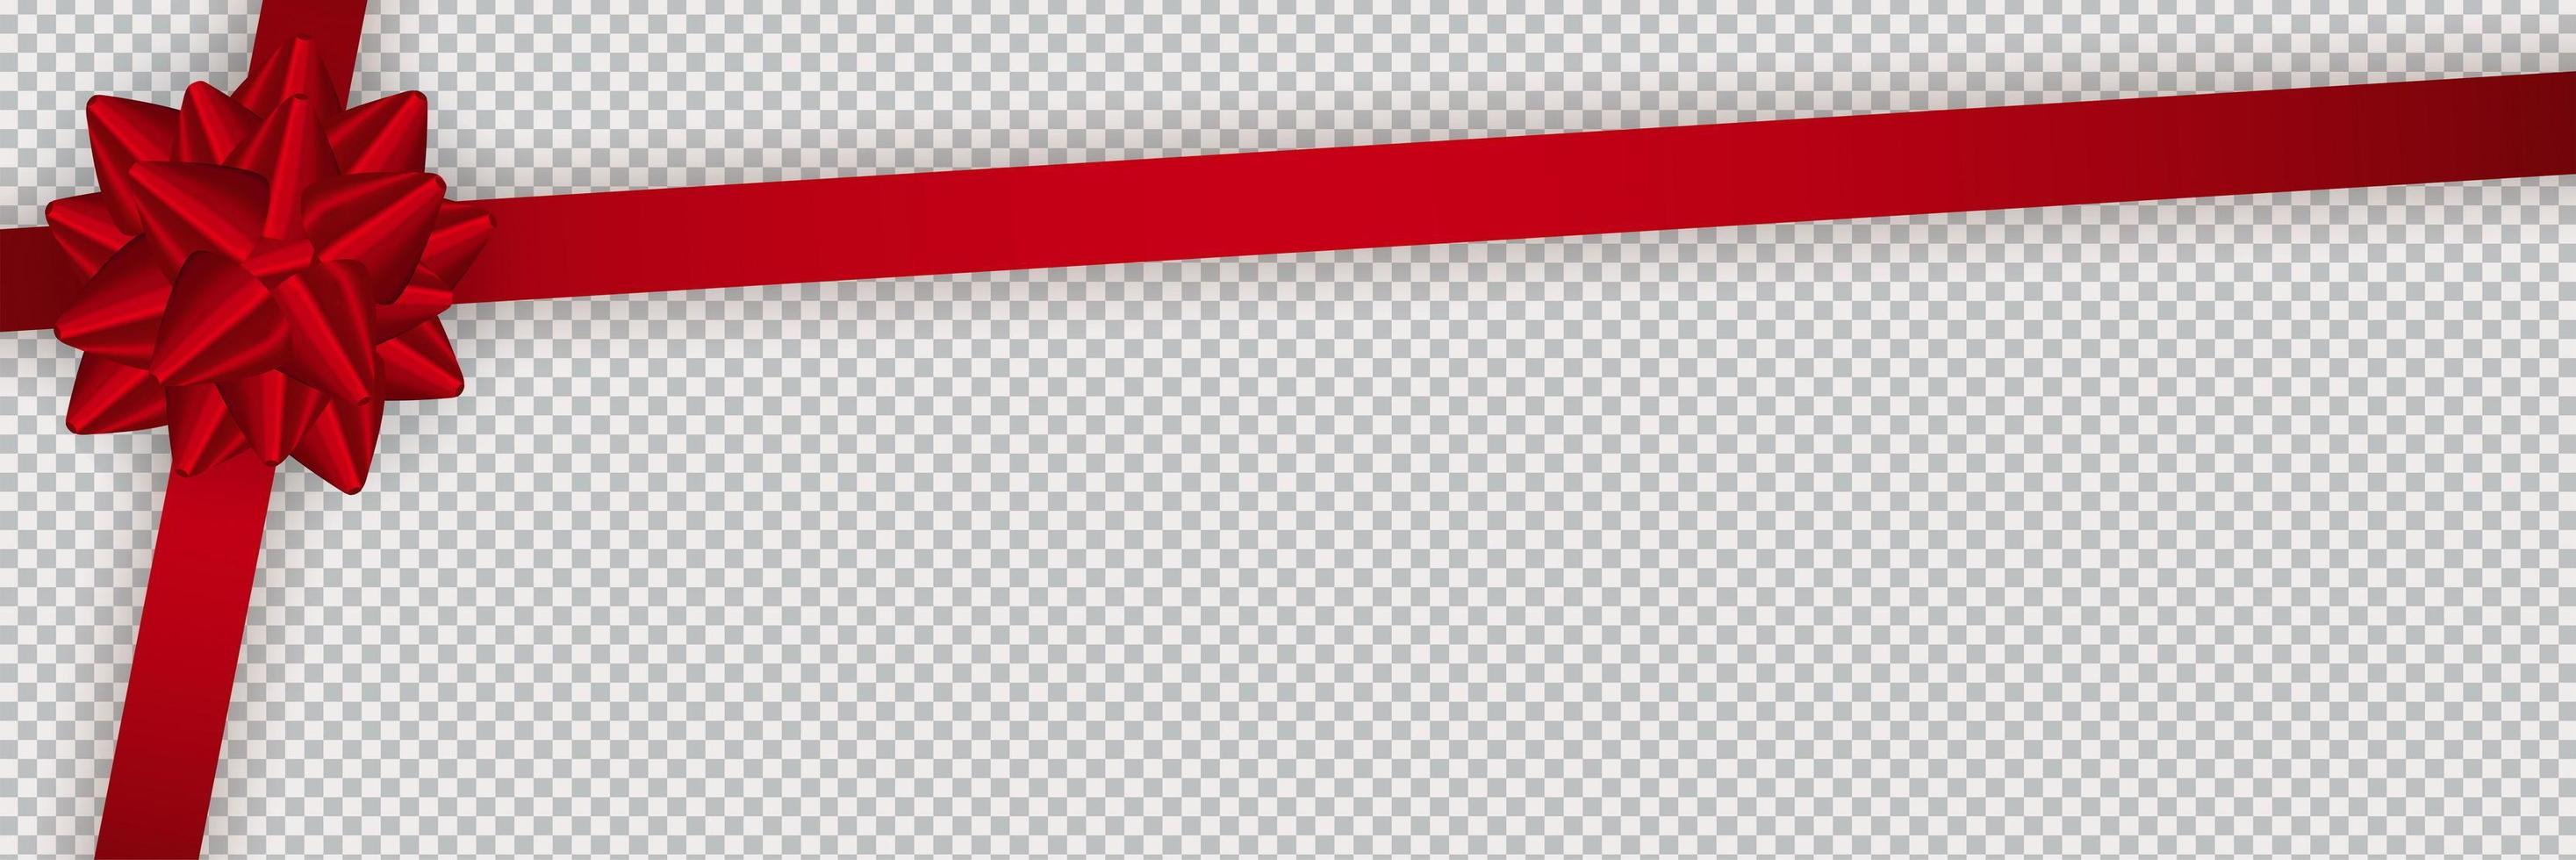 realistische rote Schleife und Band auf transparentem Hintergrund isoliert. Vorlage für Grußkarten, Poster oder Broschüren. vektor